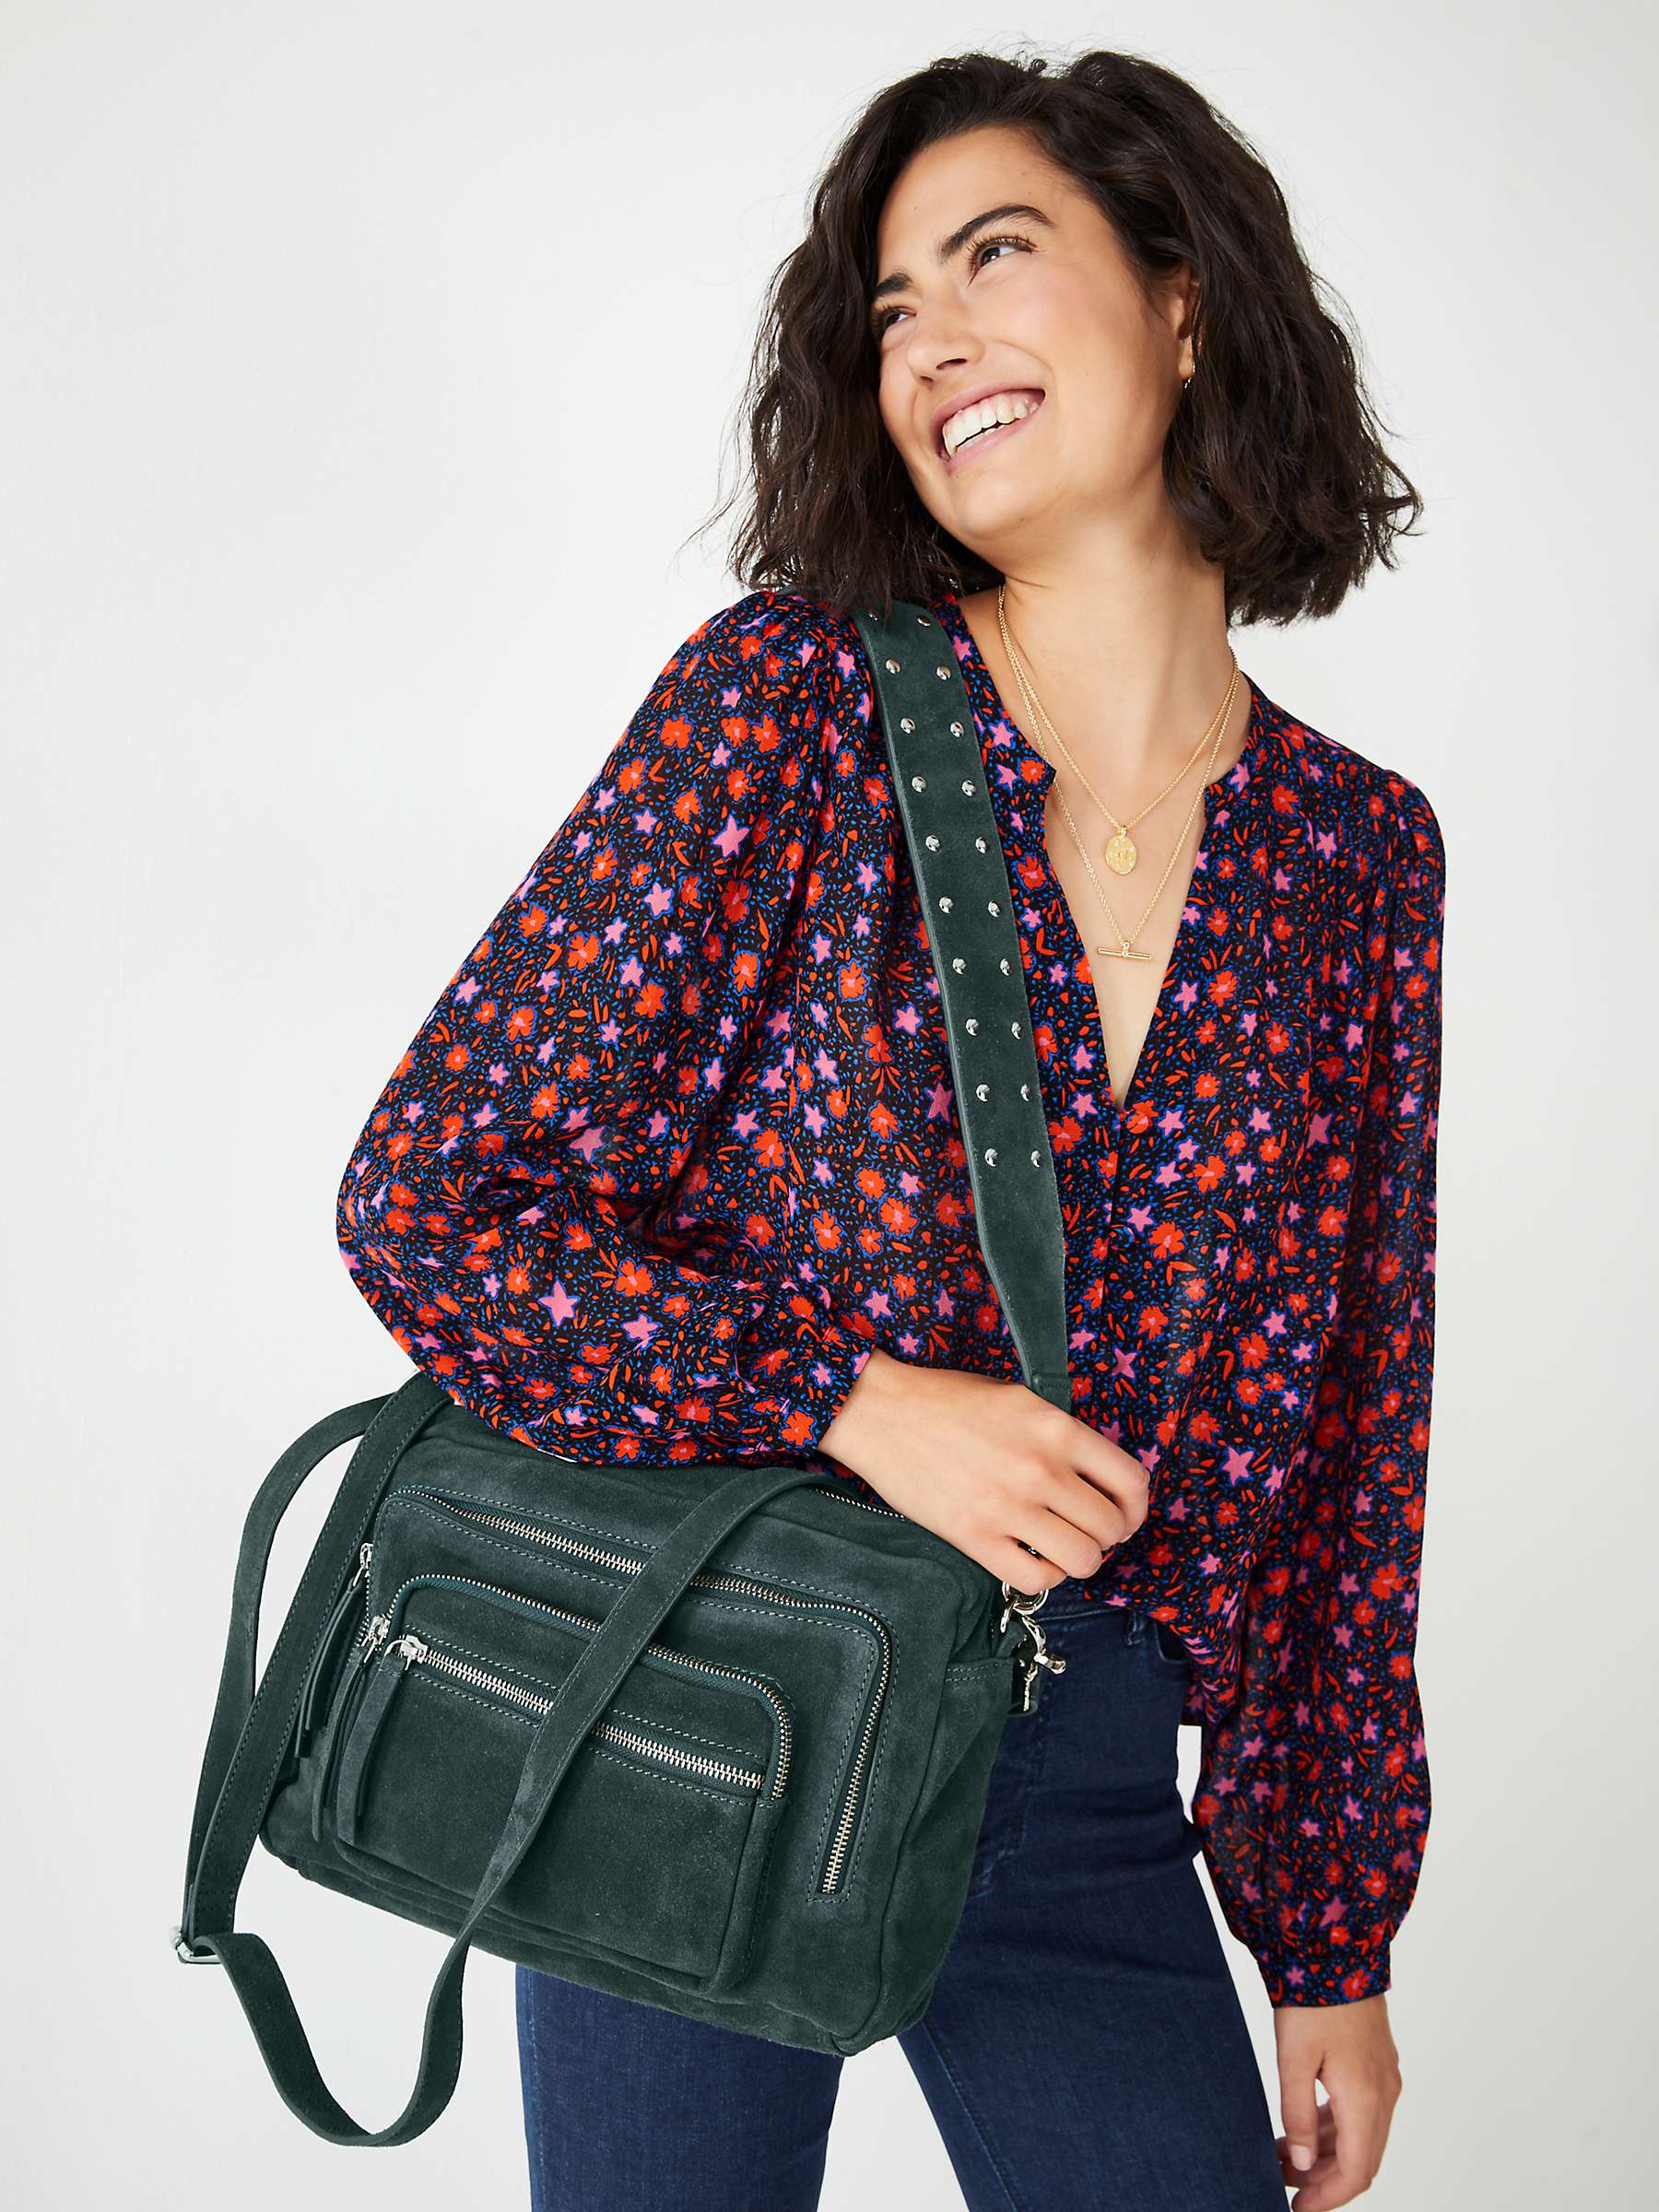 Buy HUSH Angelina Leather Shoulder Bag, Teal Online at johnlewis.com